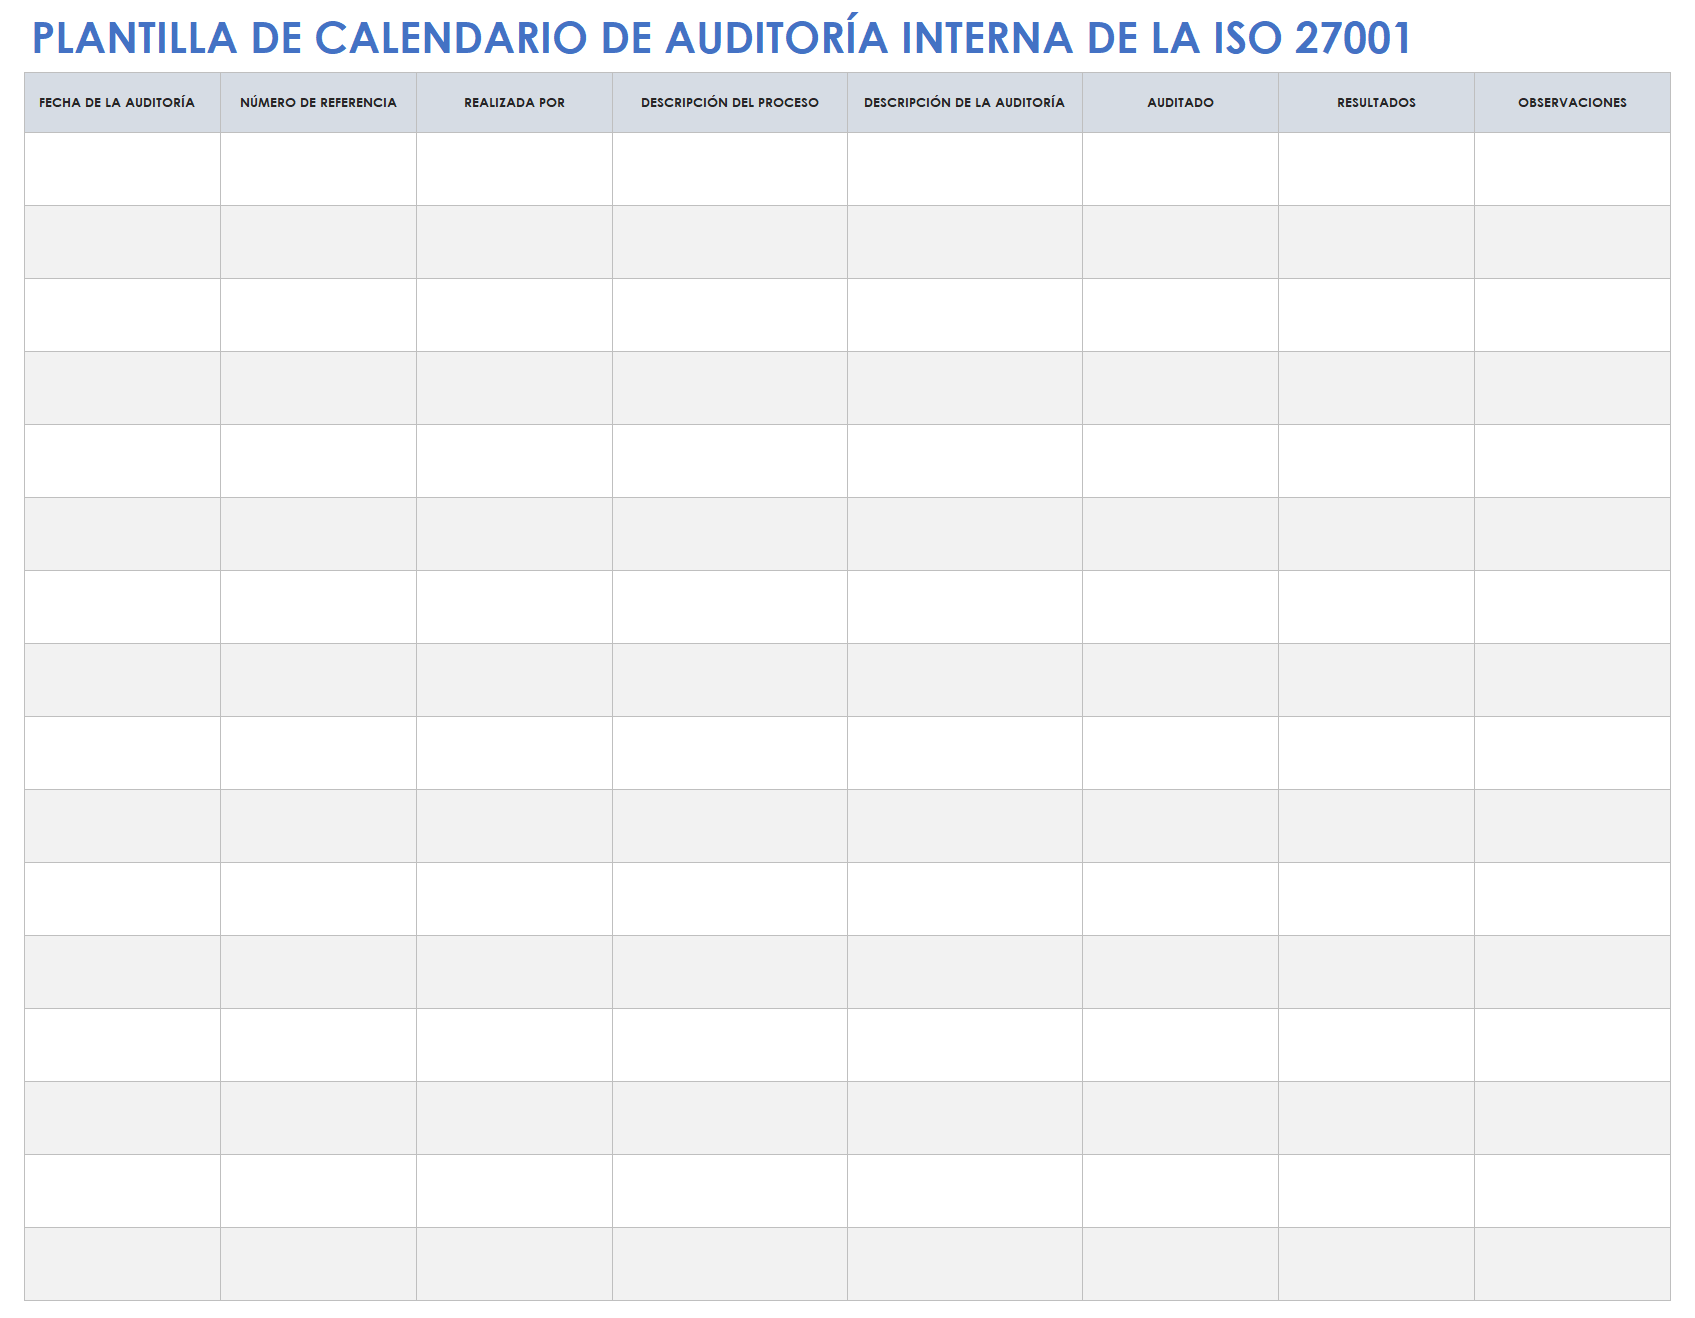 Calendario de auditoría interna ISO 27001